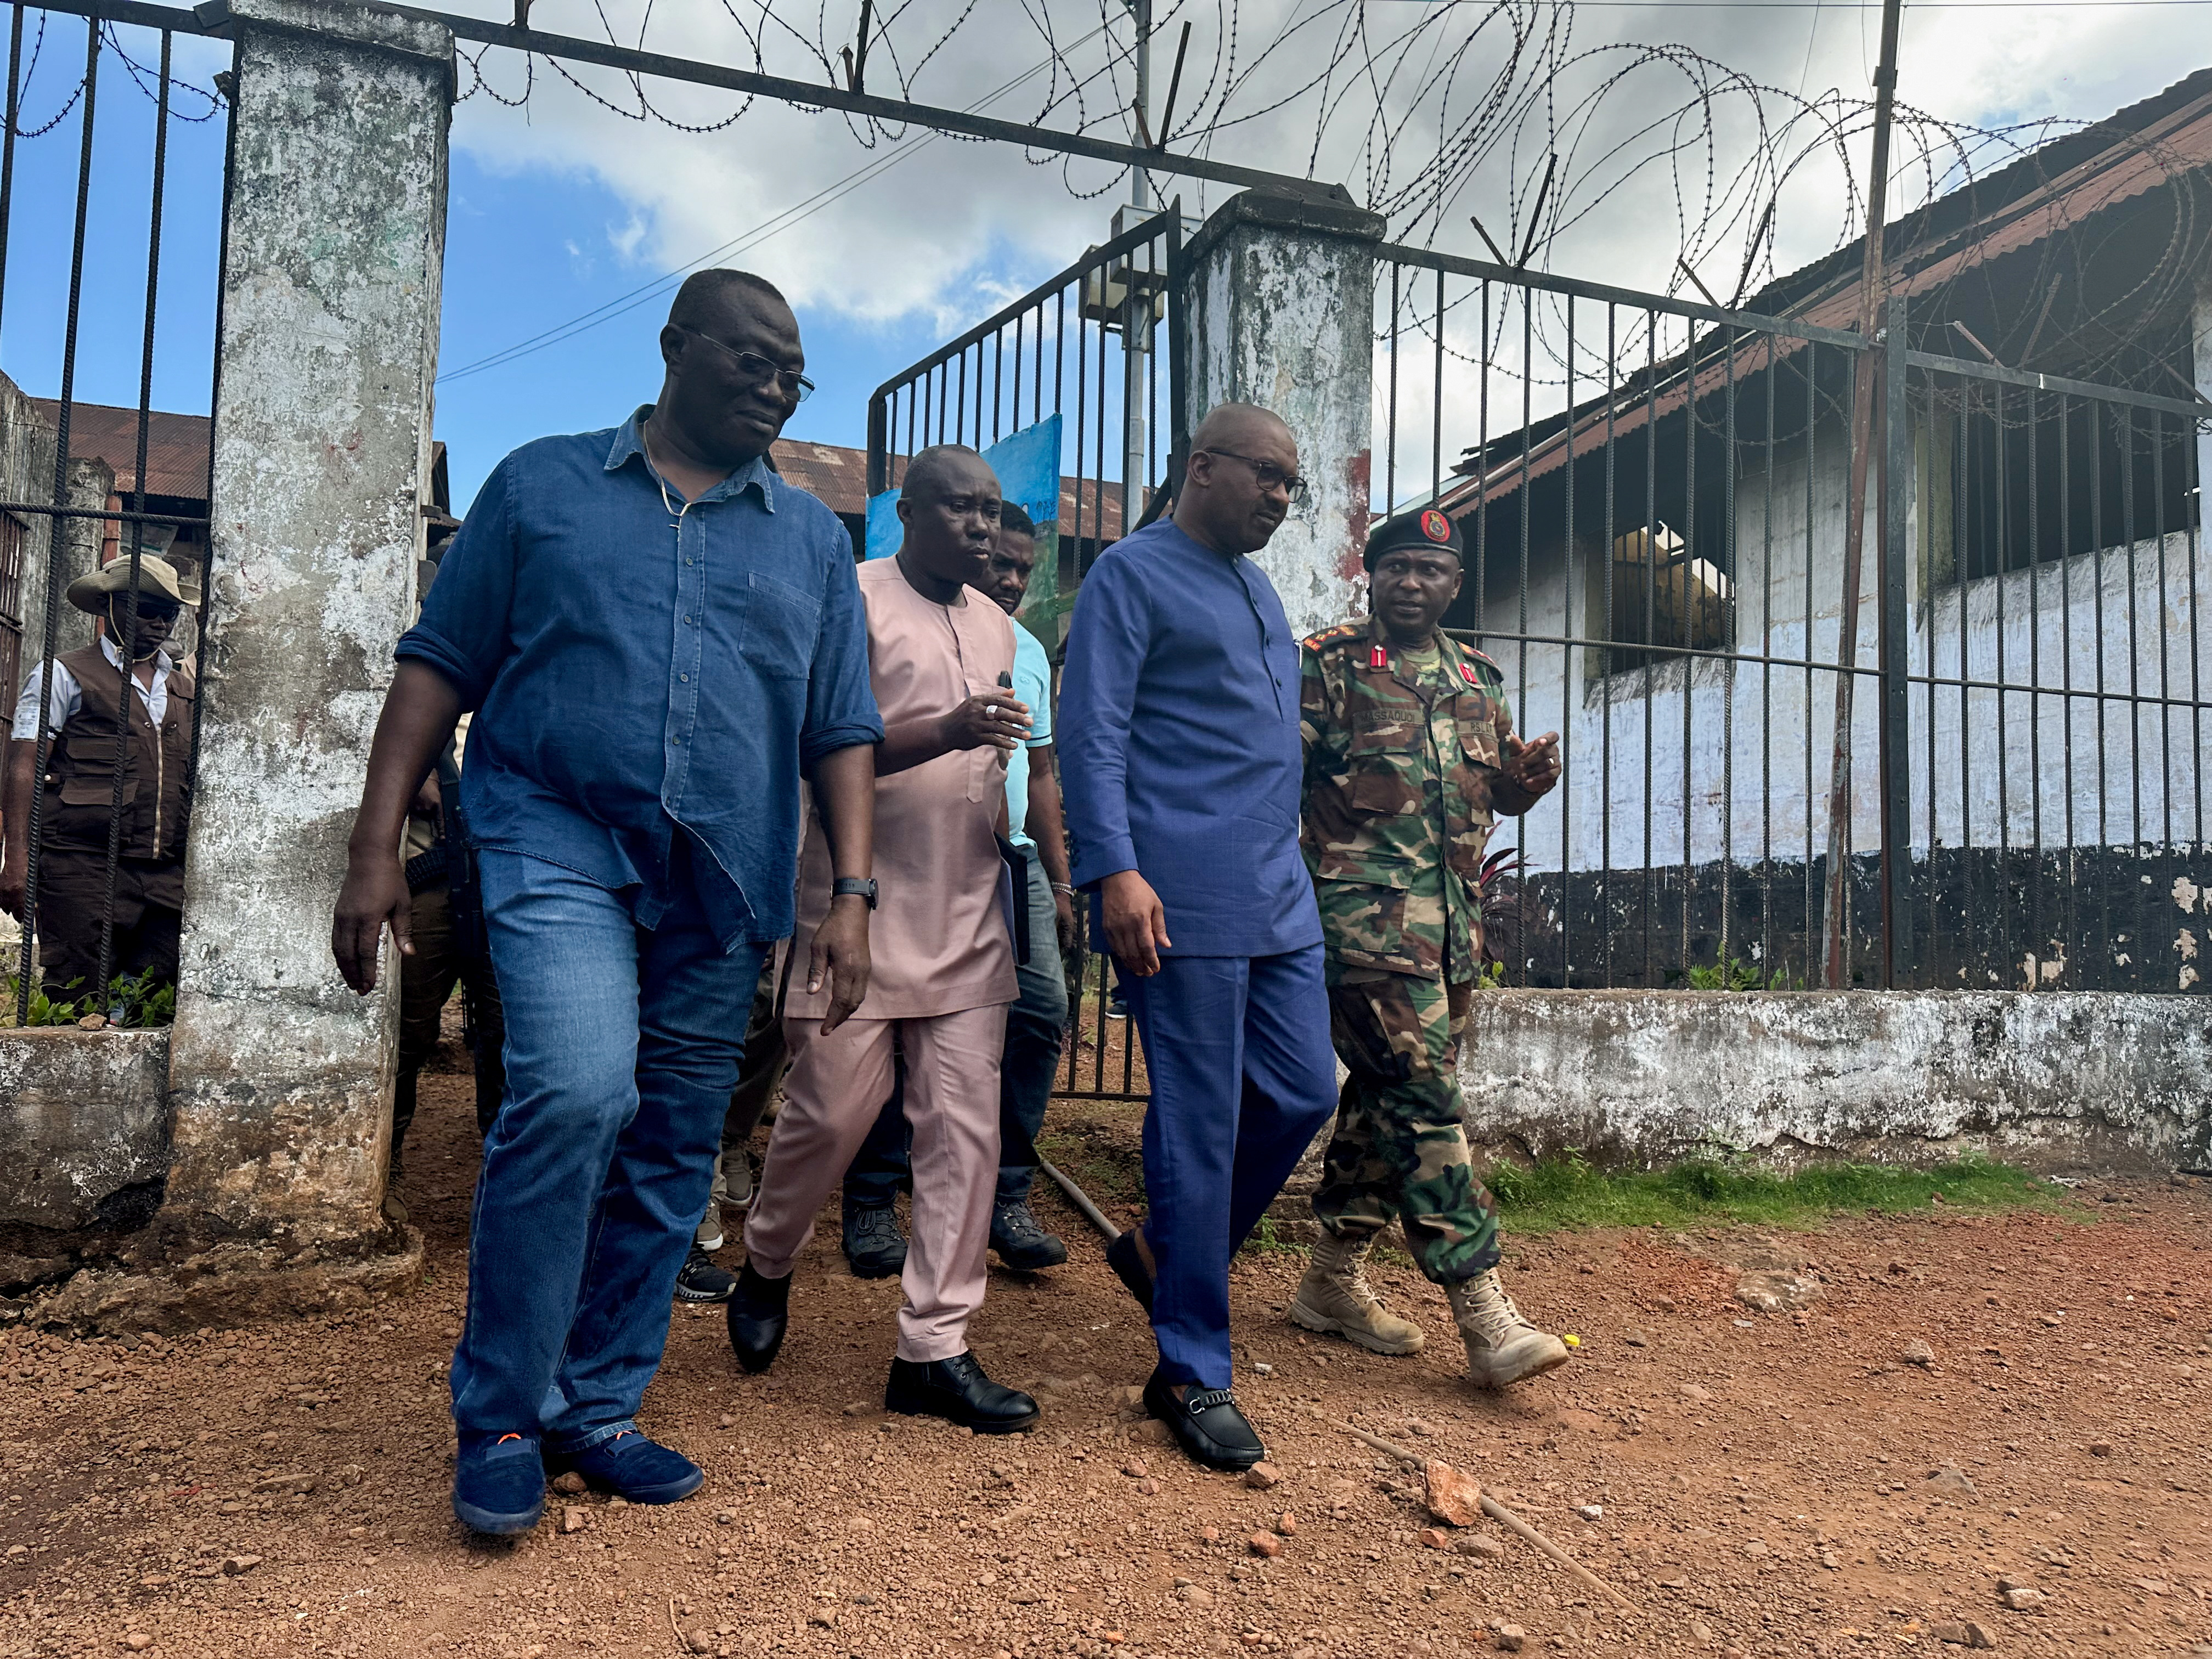 Le vice-président de la Sierra Leone, Mohamed Juldeh Jalloh, visite la prison de Pademba Road après l'attaque, à Freetown